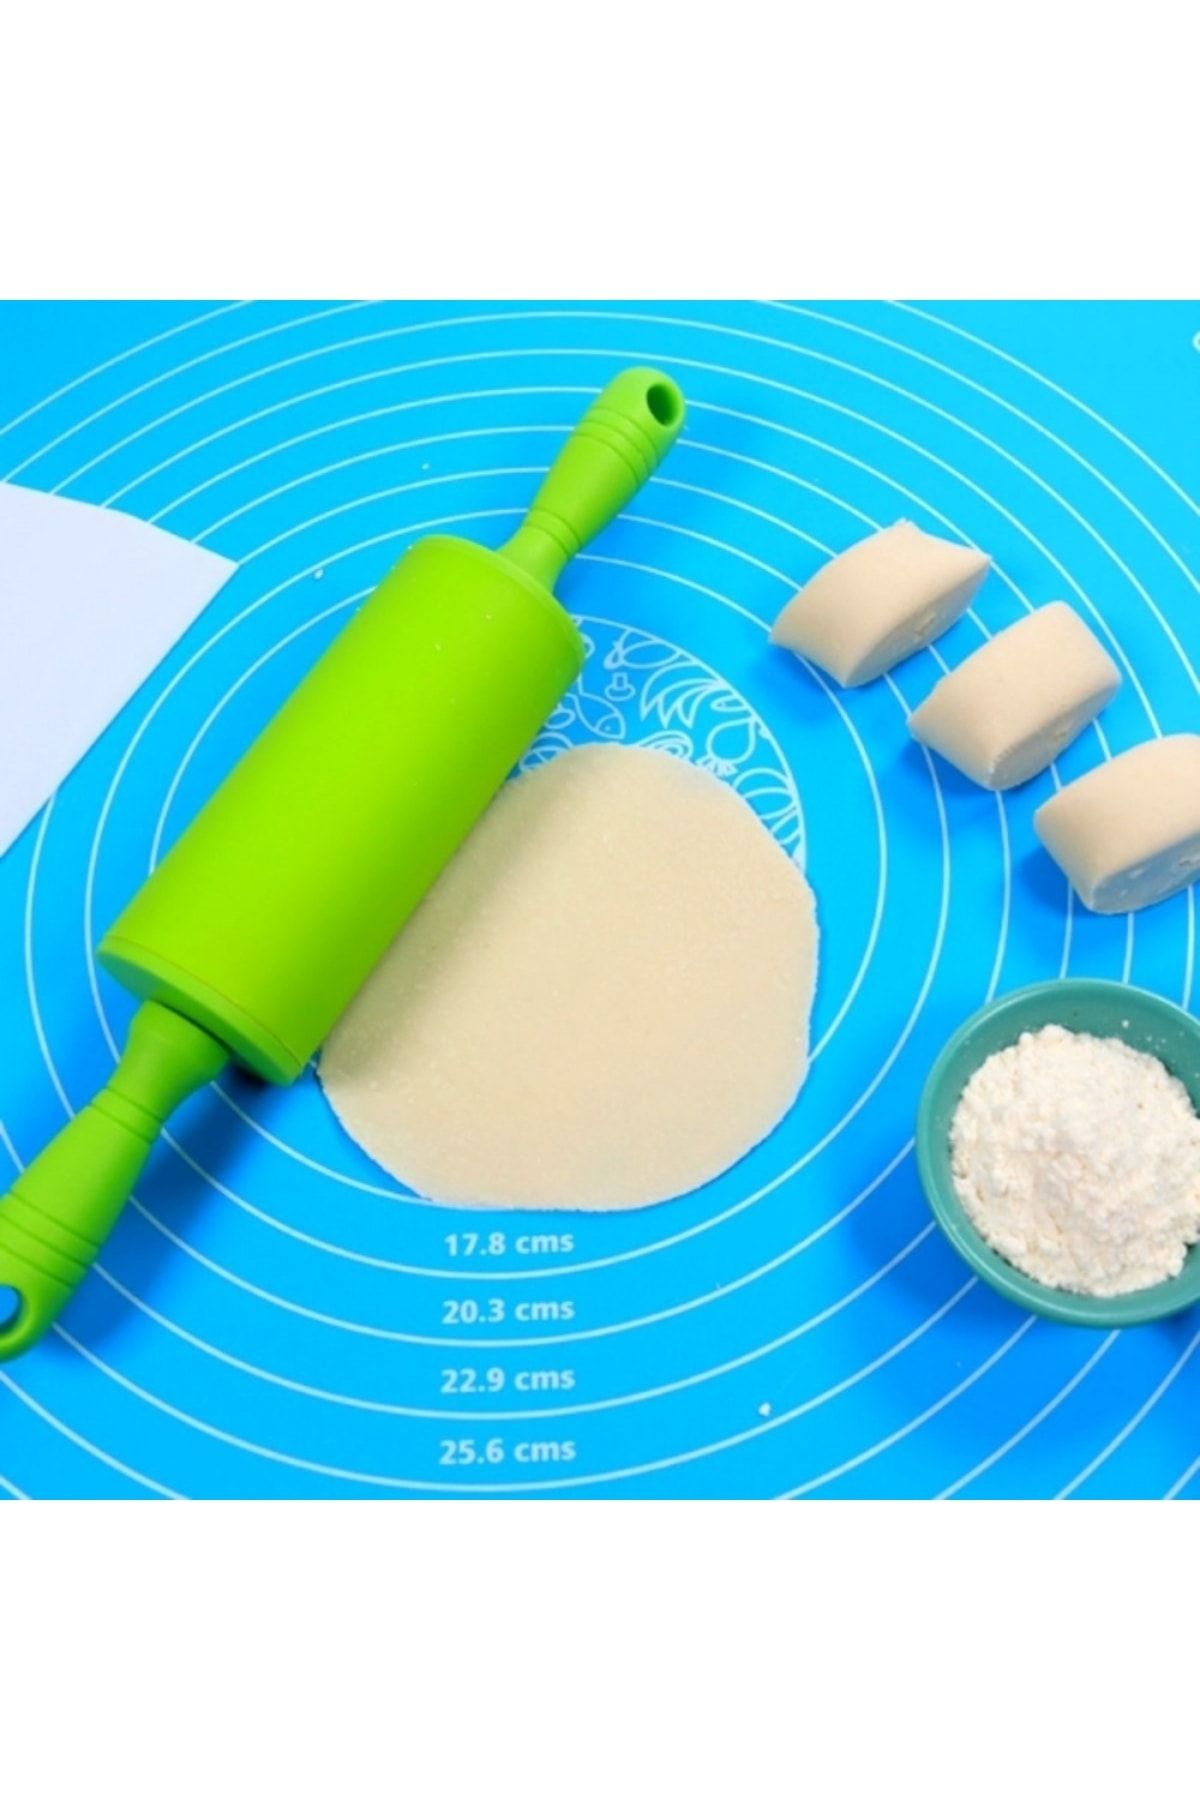 Genel Markalar 40x50 cm Silikon Ölçekli Kullanımı Kolay Hamur Açma Matı Ekmek Mantı Makarna Hamuru Yoğurma Matı